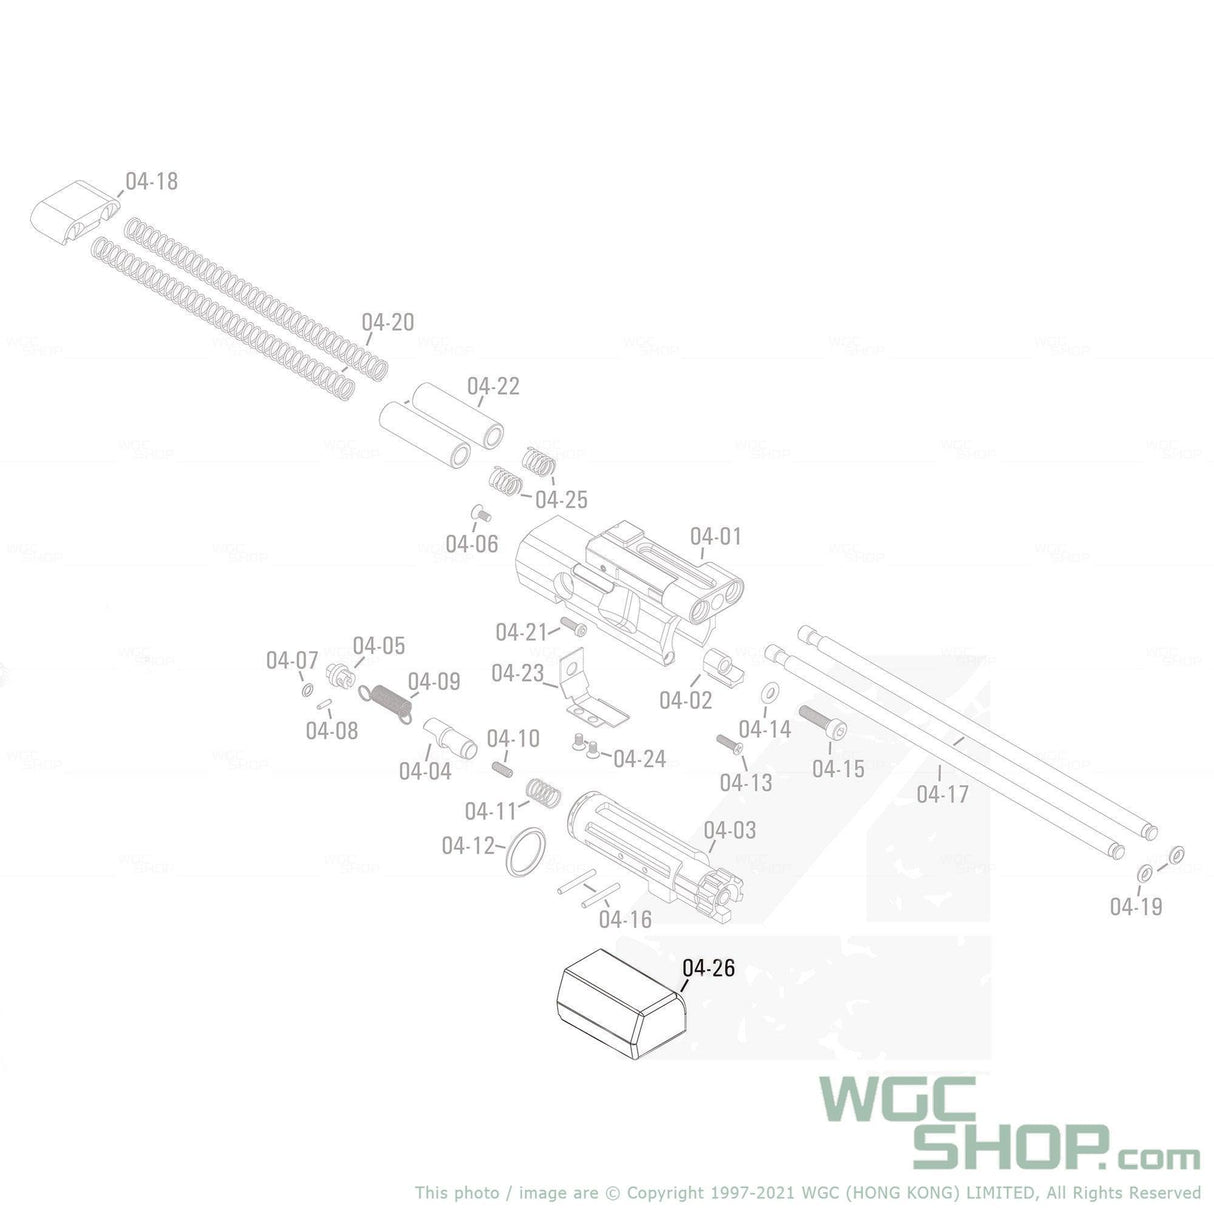 APFG Original Parts - MPX GBB Buffer ( 04-26 ) - WGC Shop